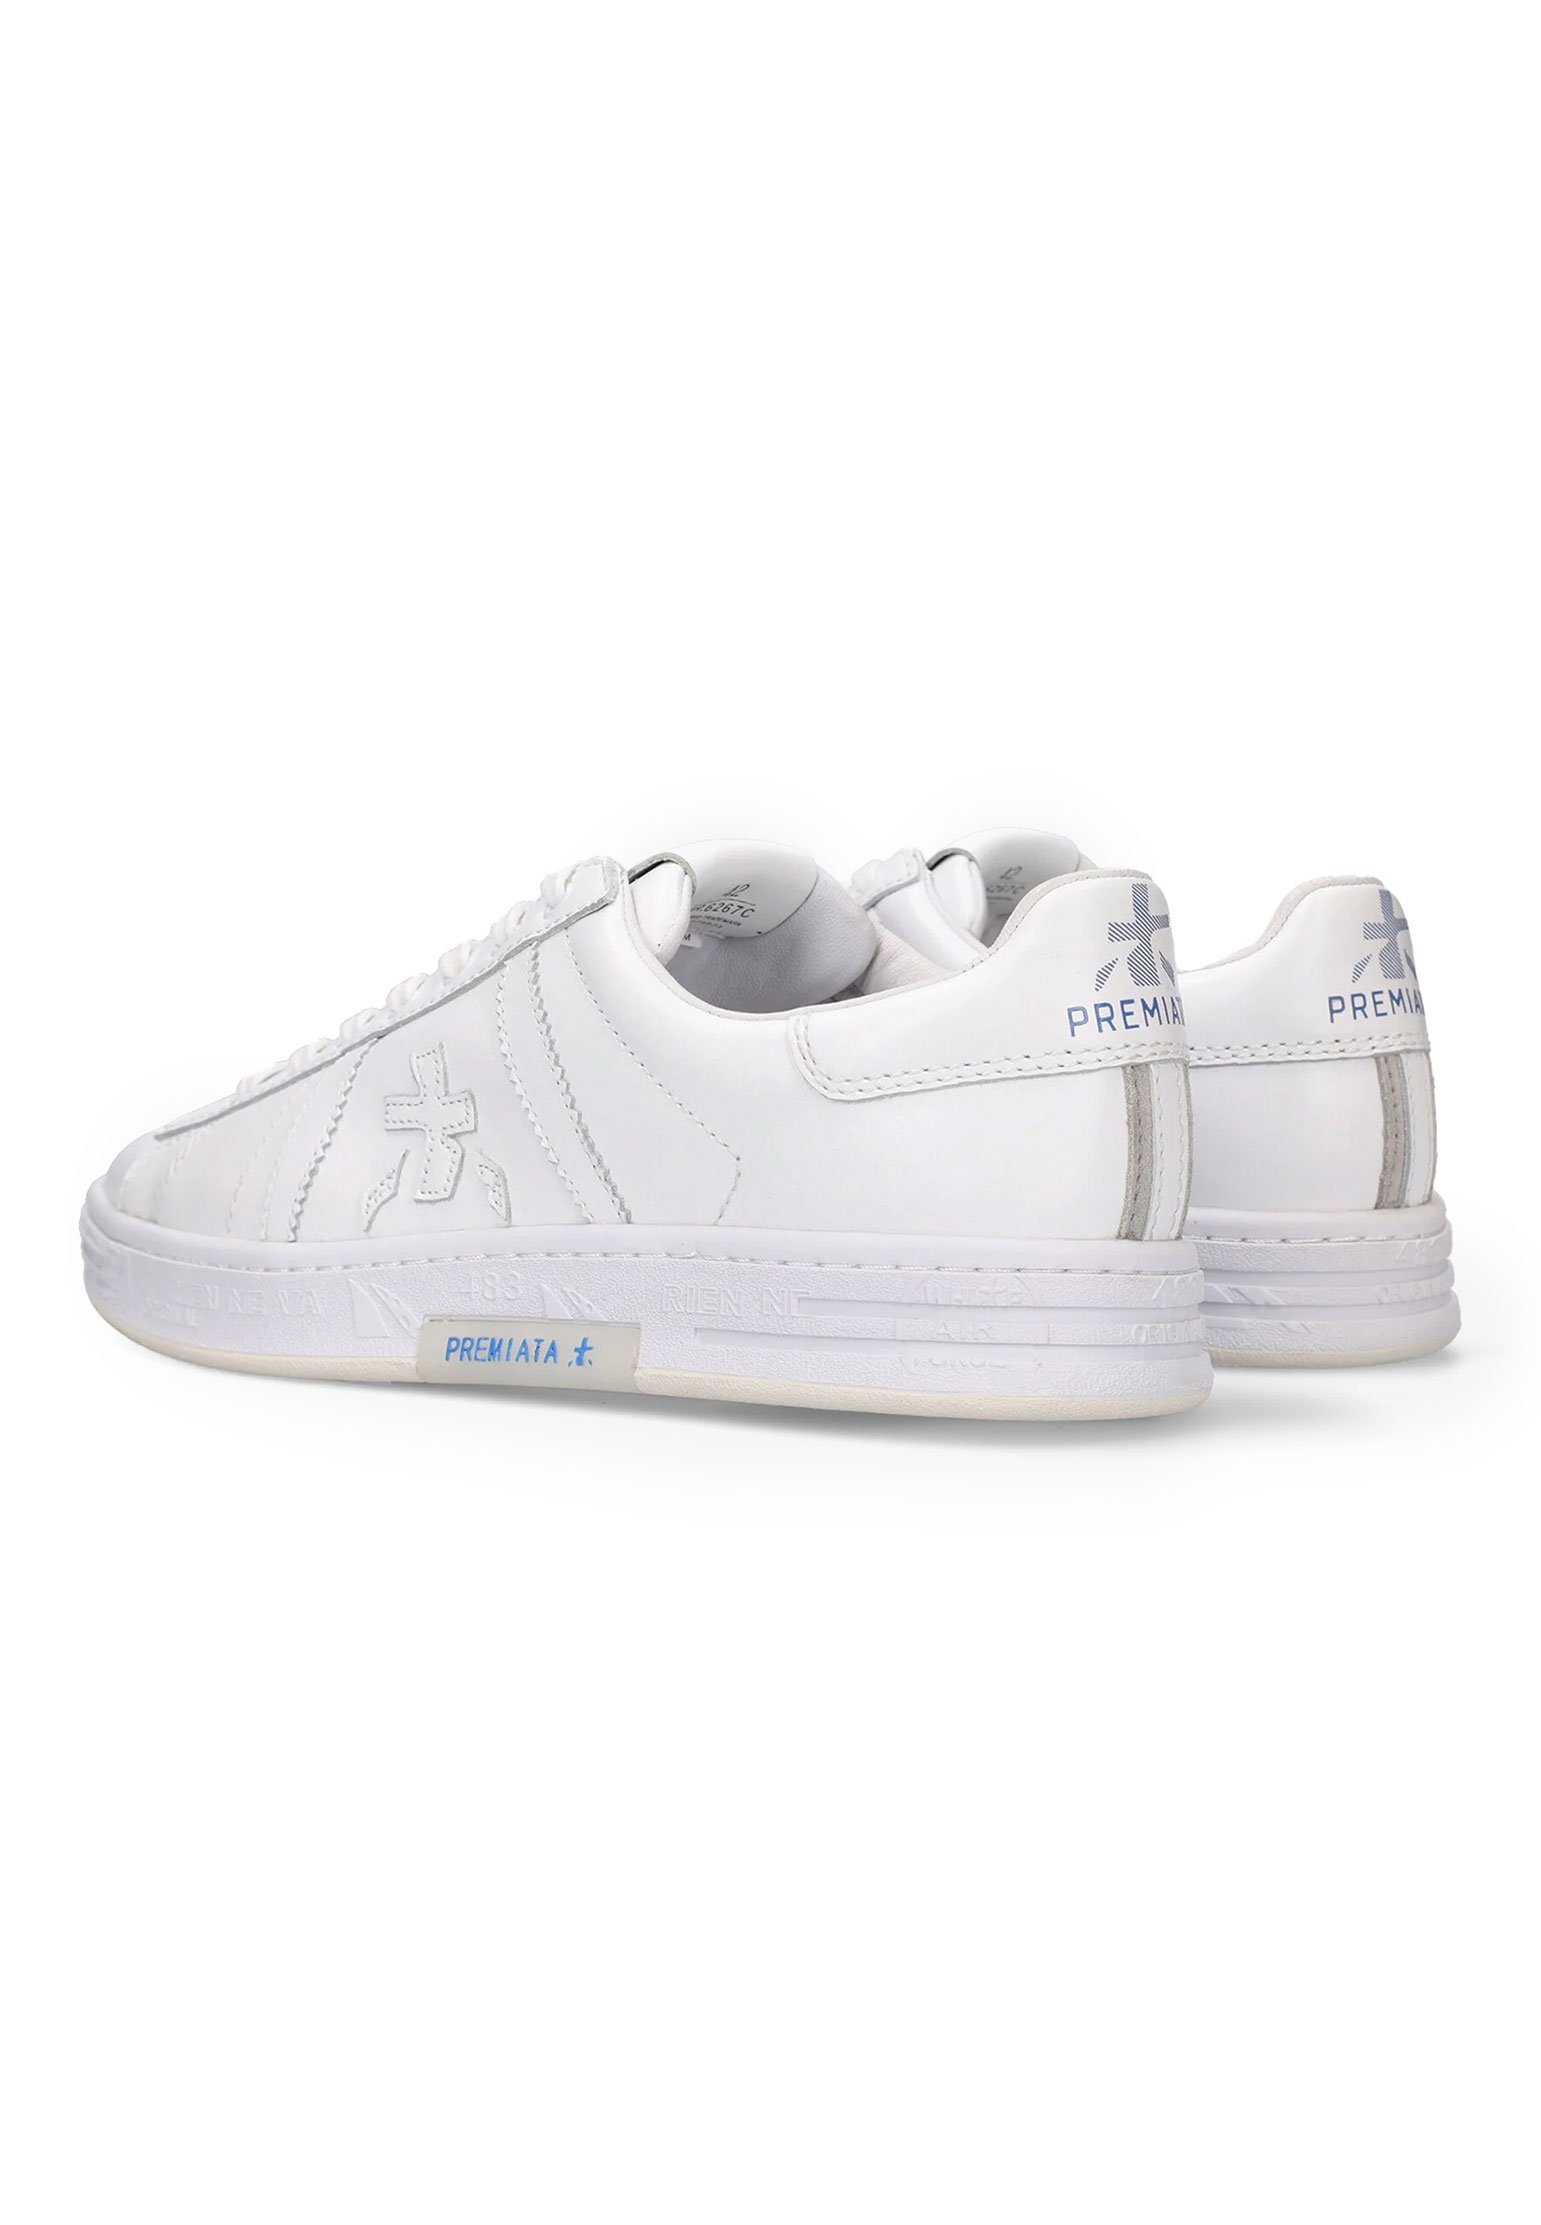 Sneakers PREMIATA Color: white (Code: 4177) in online store Allure